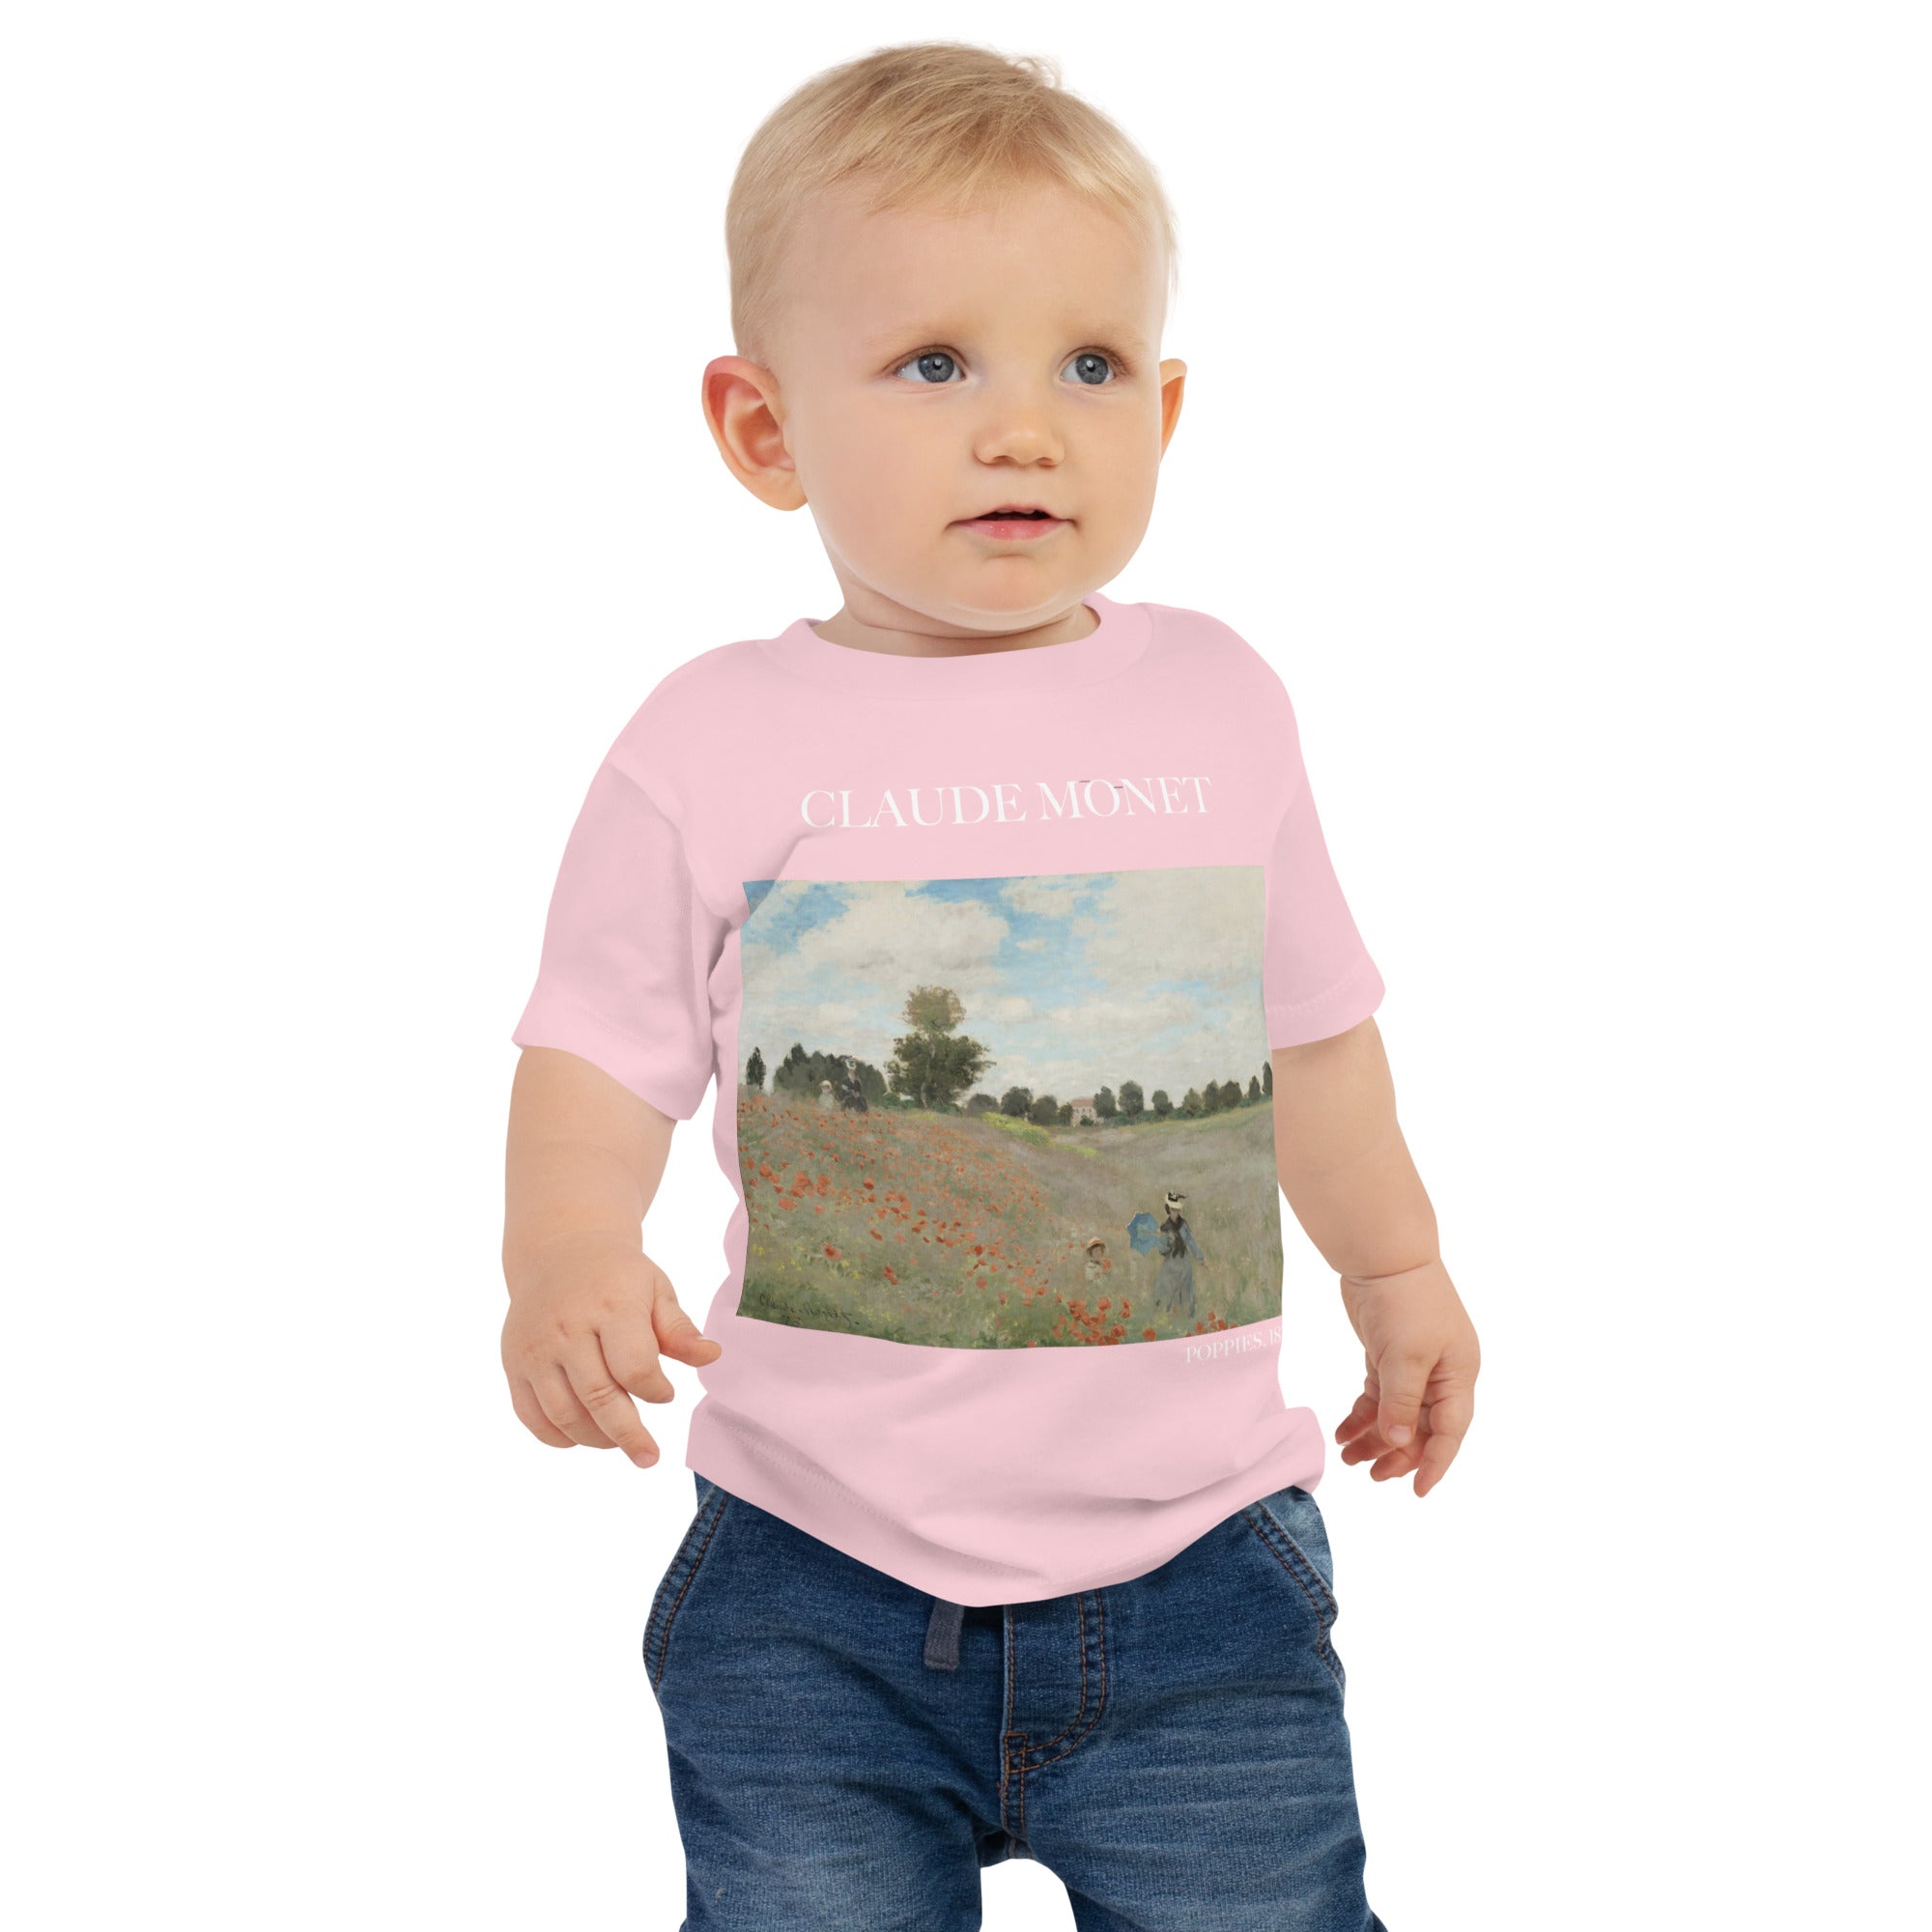 Claude Monet 'Poppies' Famous Painting Baby Staple T-Shirt | Premium Baby Art Tee